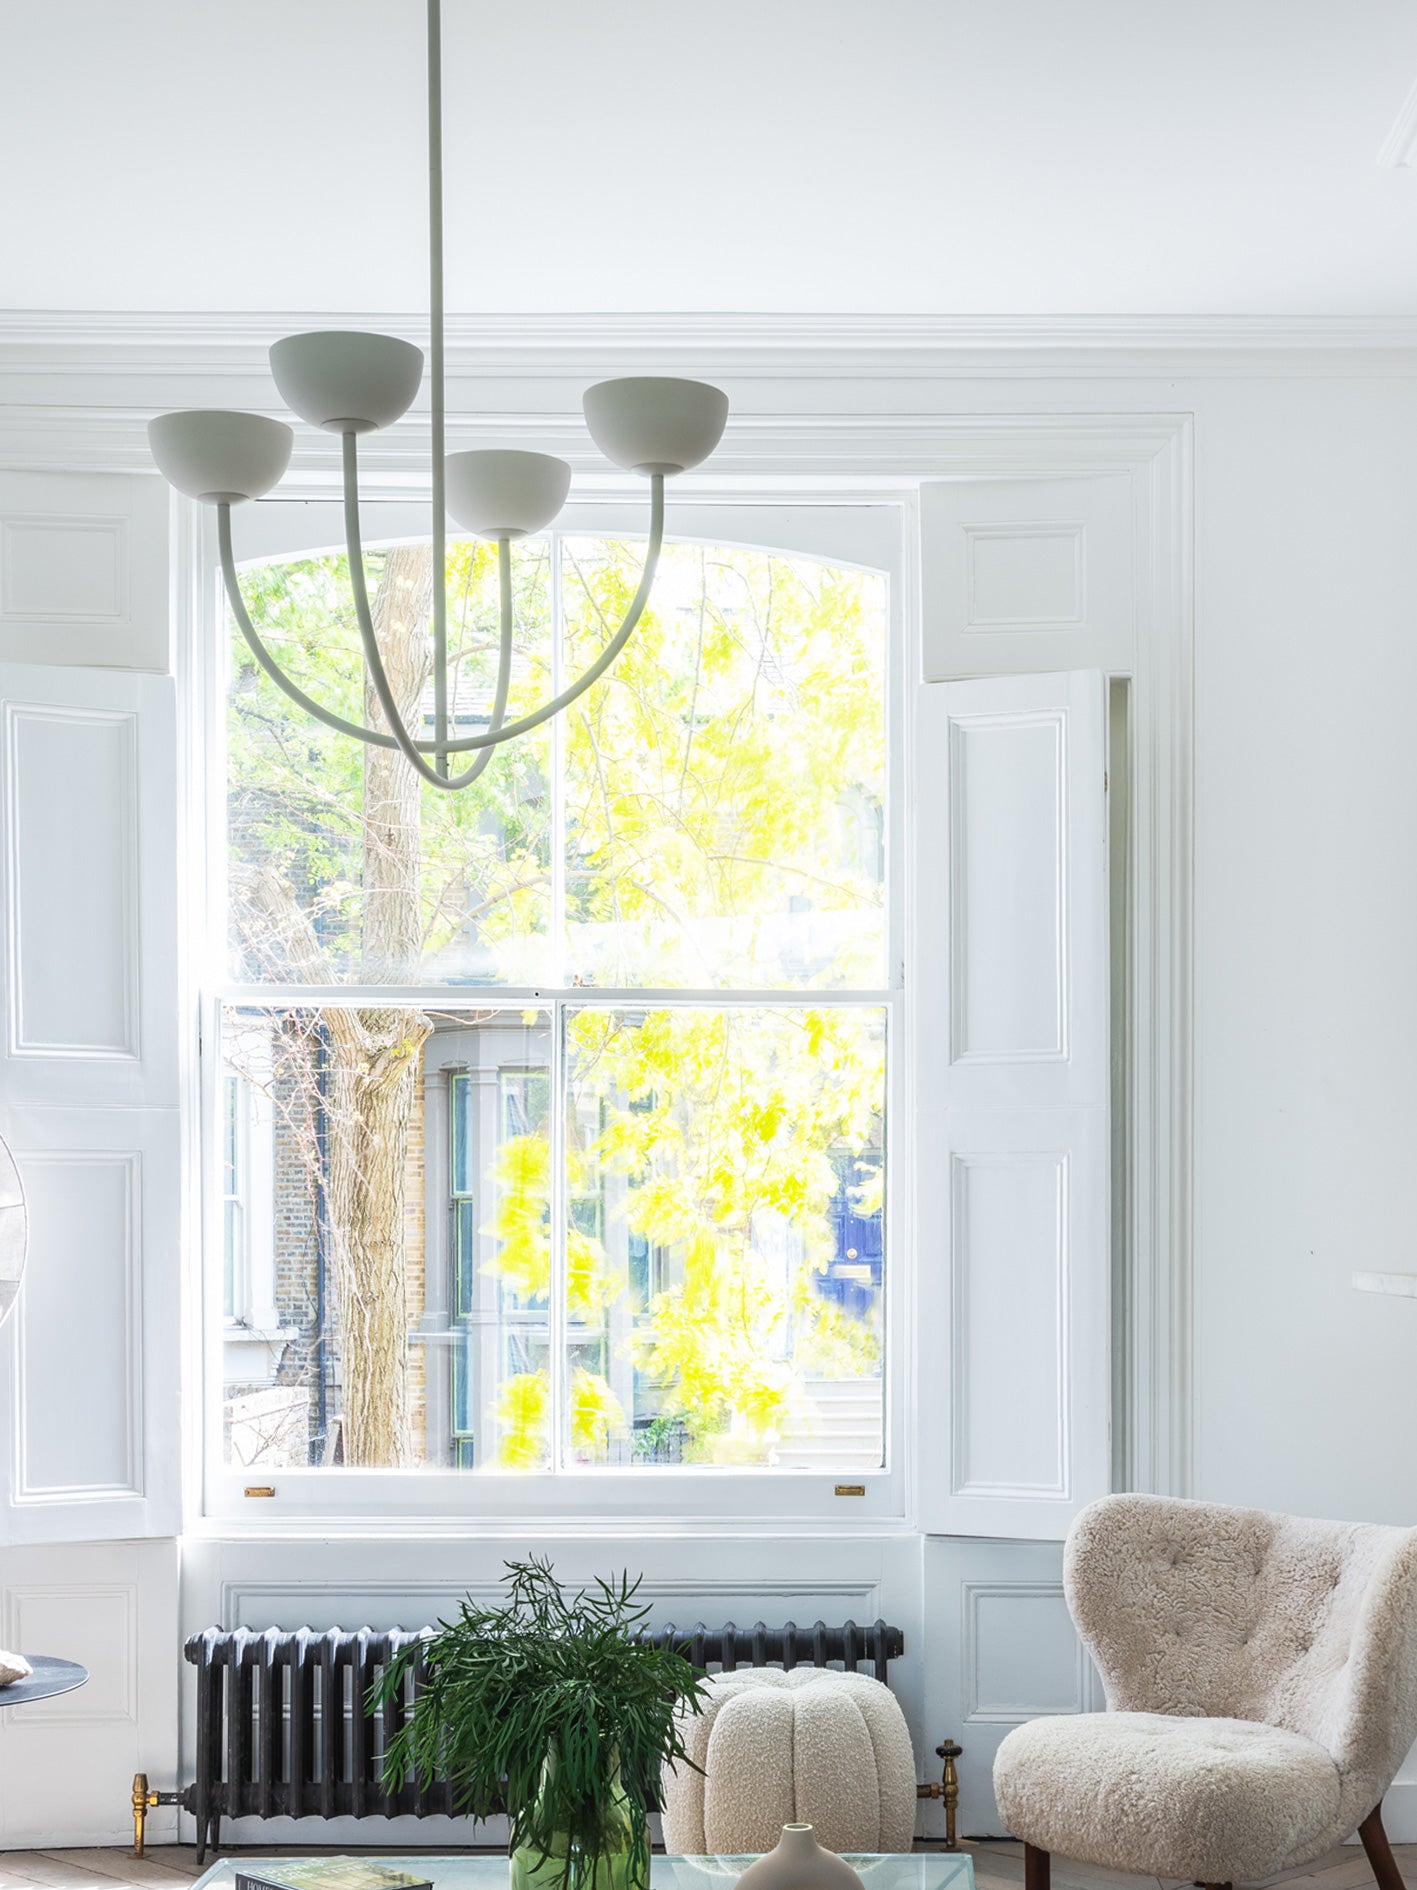 Ruzo - 4 light matt warm white and white porcelain ceiling pendant | Chandelier | Lights & Lamps | UK | Modern Affordable Designer Lighting